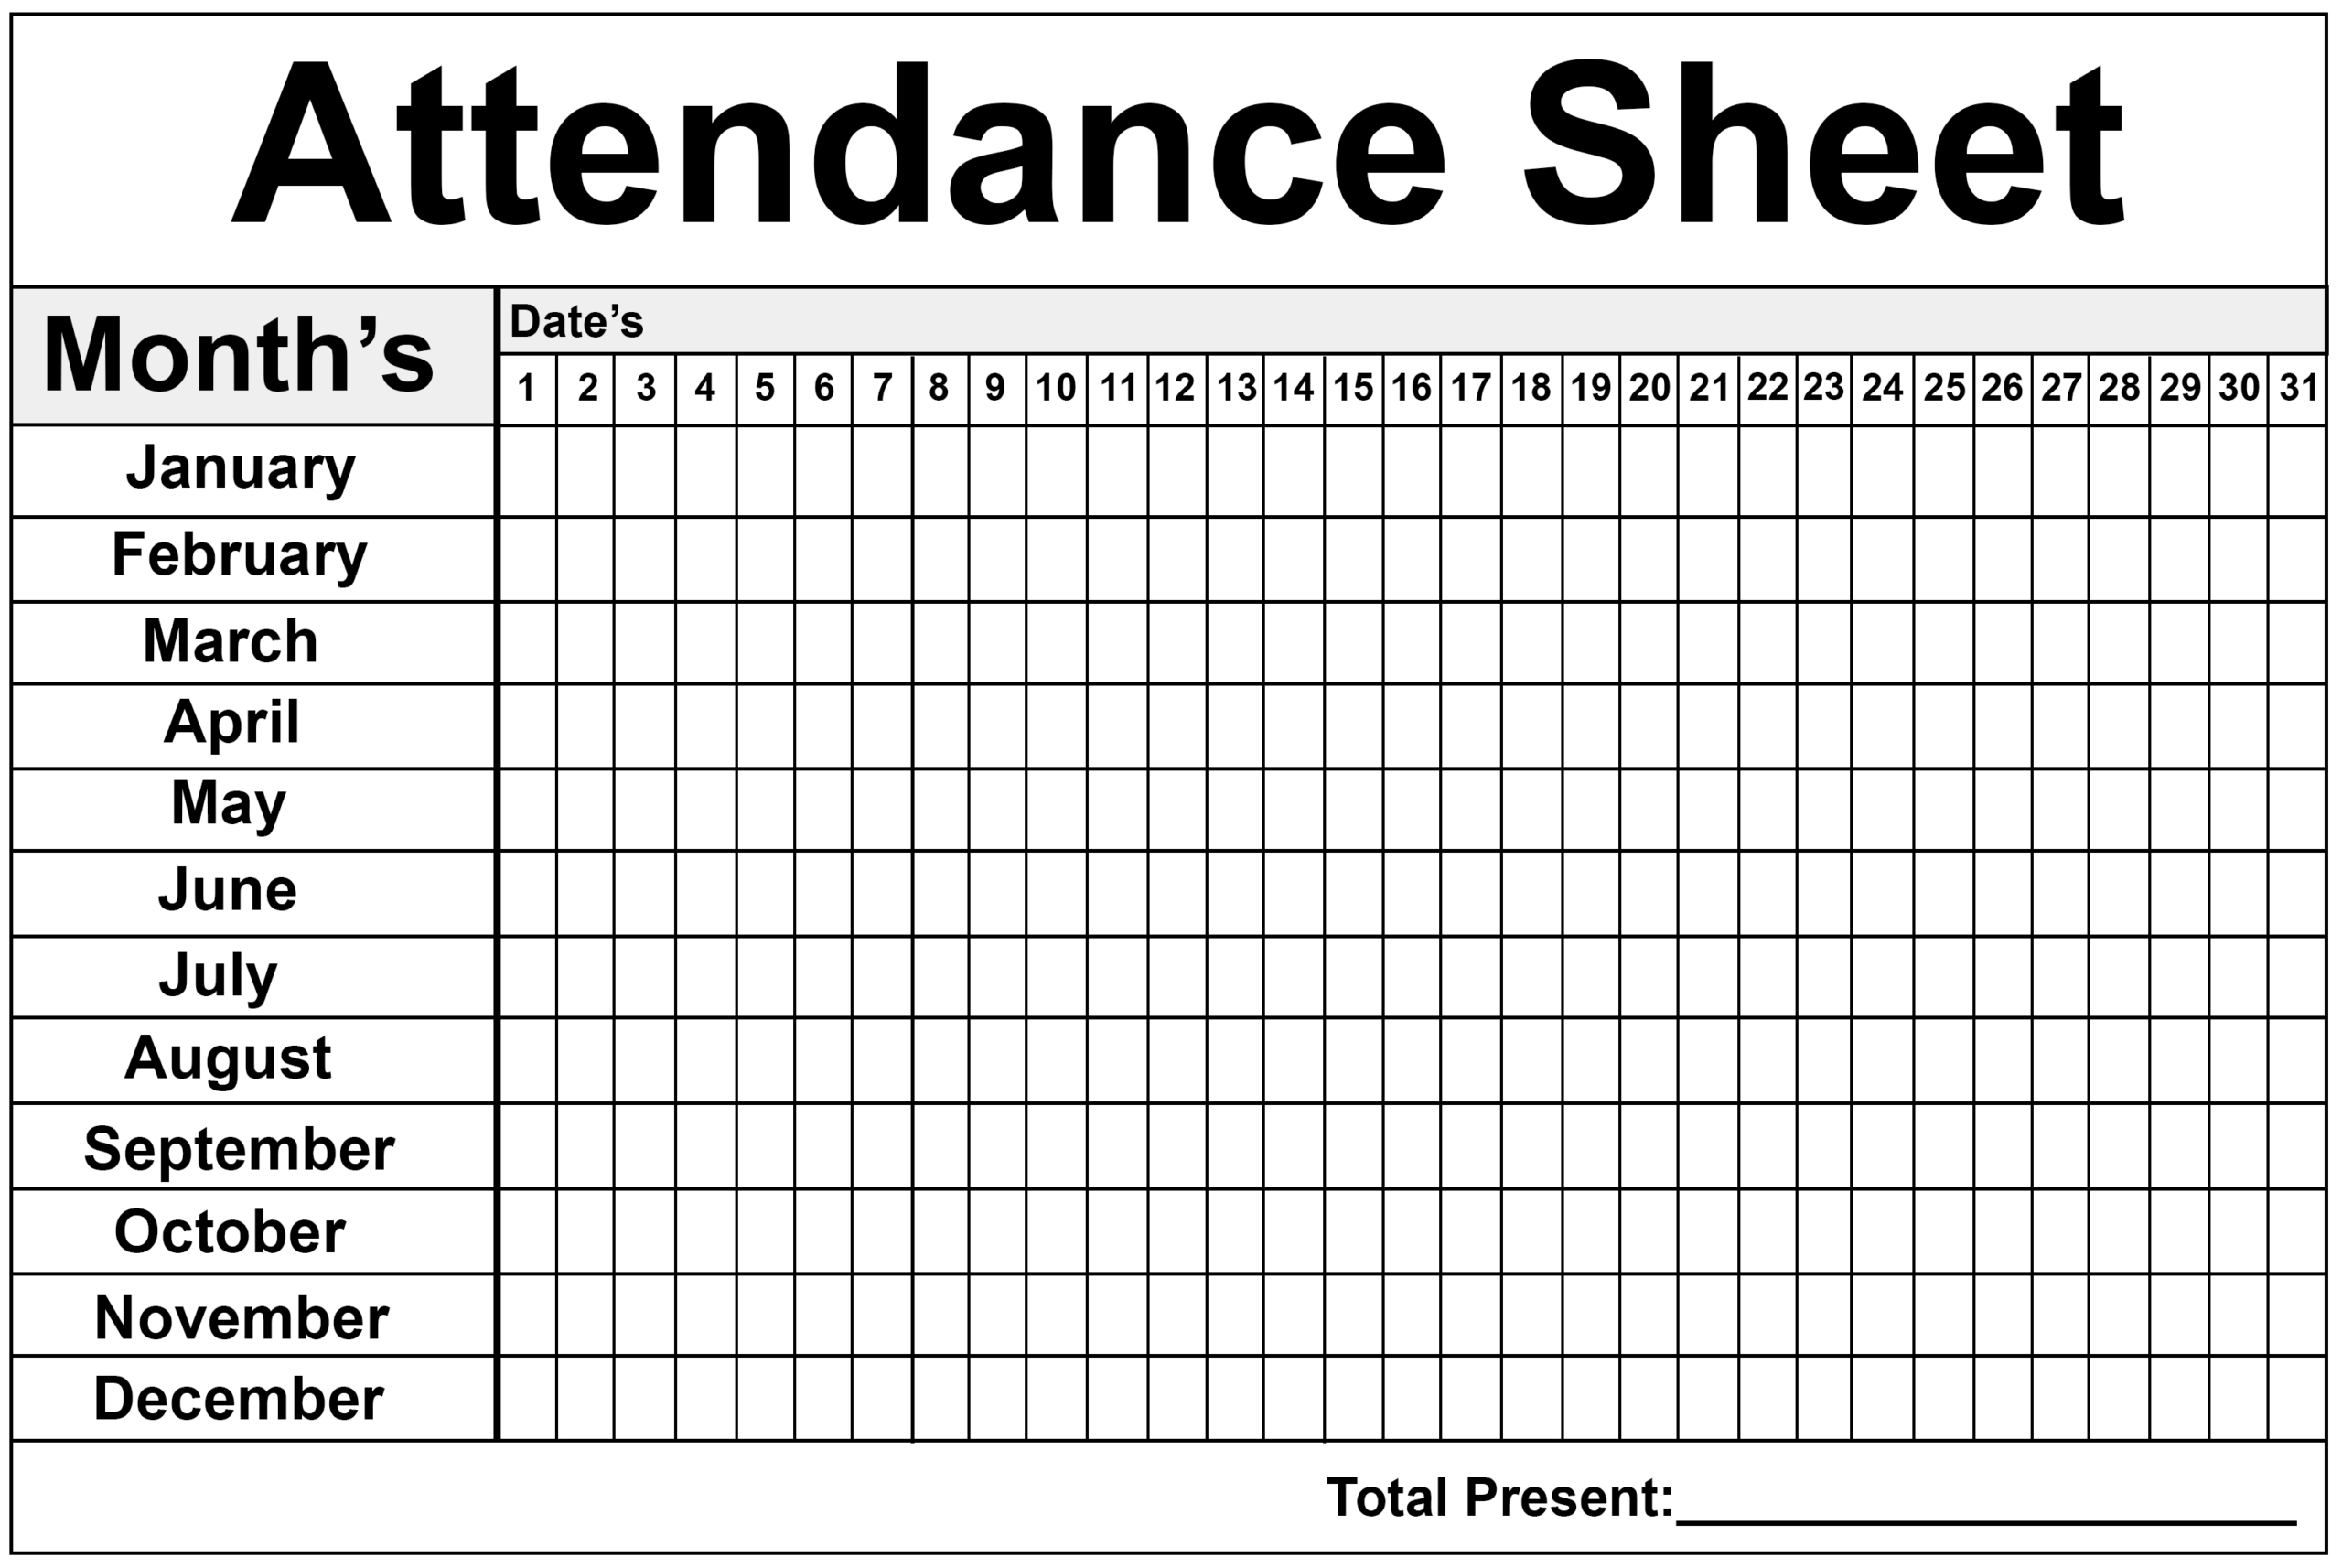 2020 Employee Attendance Calendar Free | Calendar For Planning